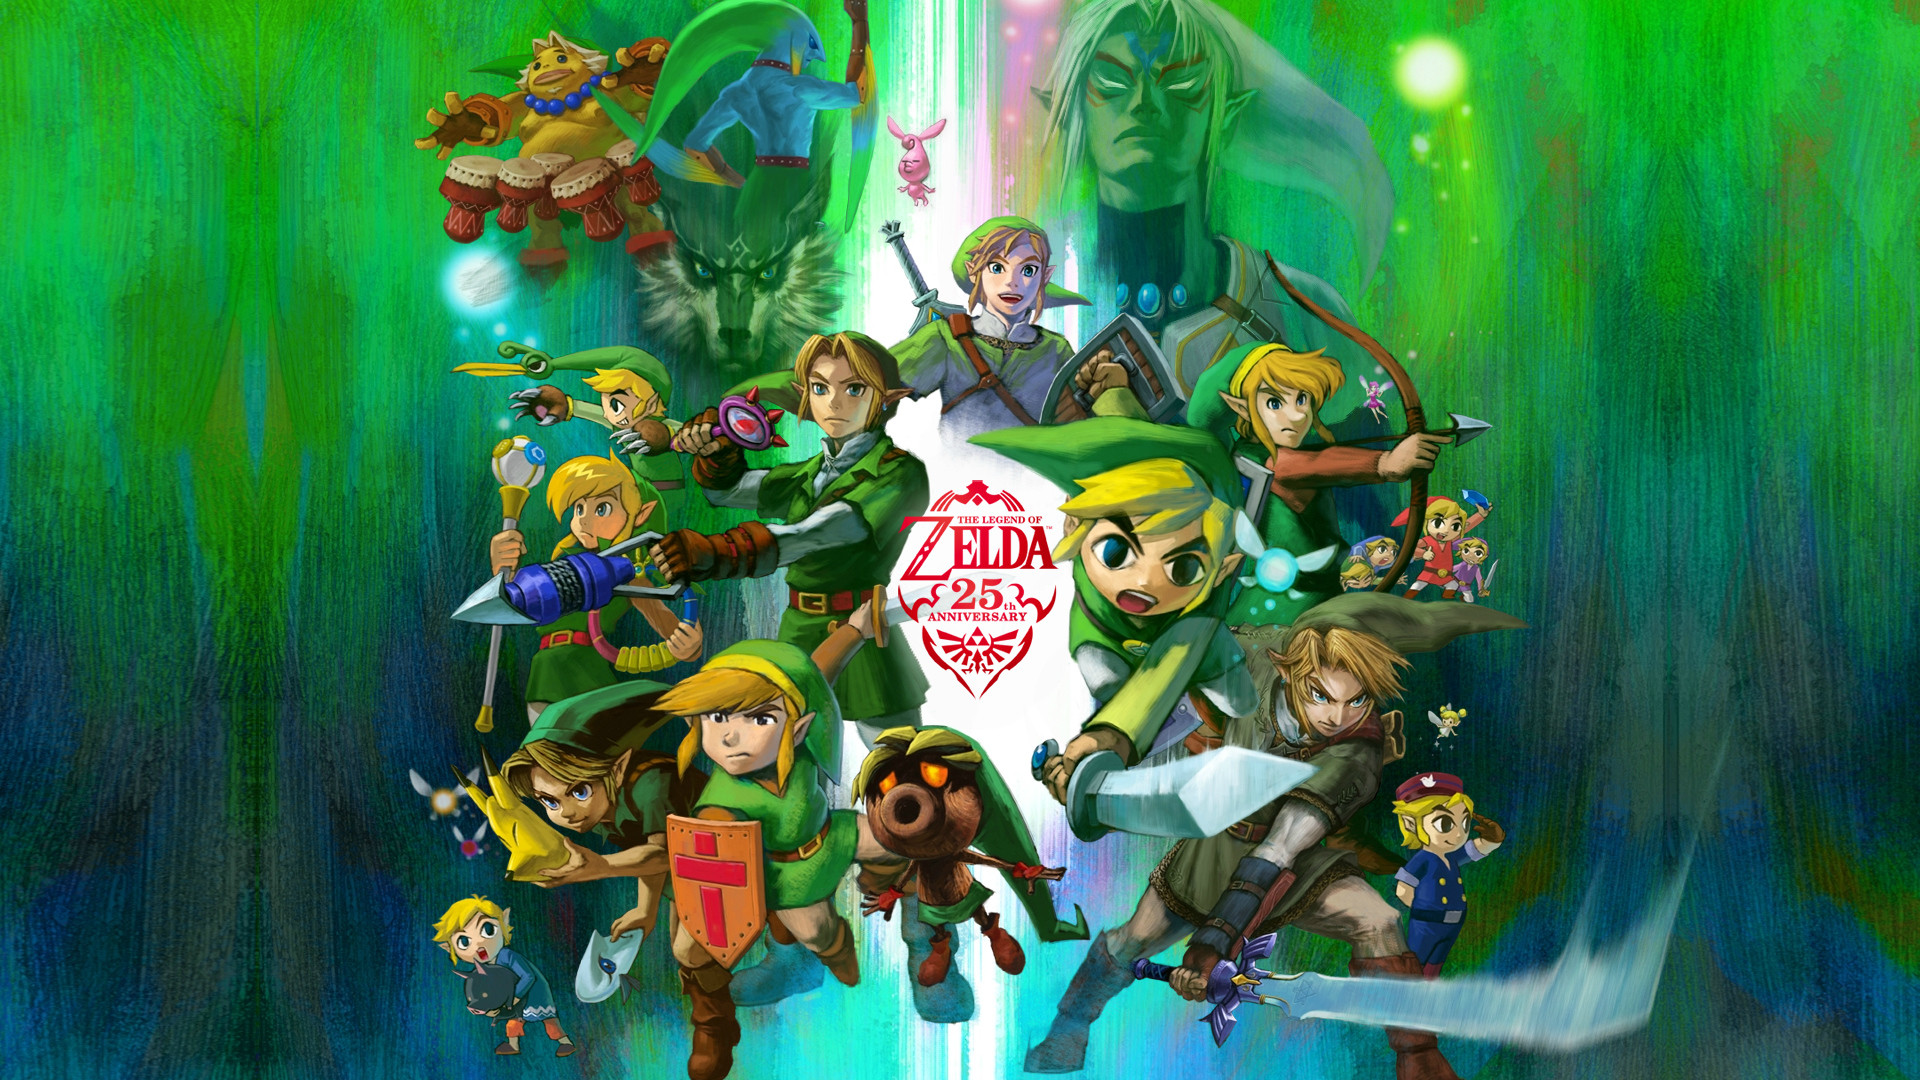 1920x1080 The-Legend-of-Zelda-Wallpaper-HD-1080p.jpg